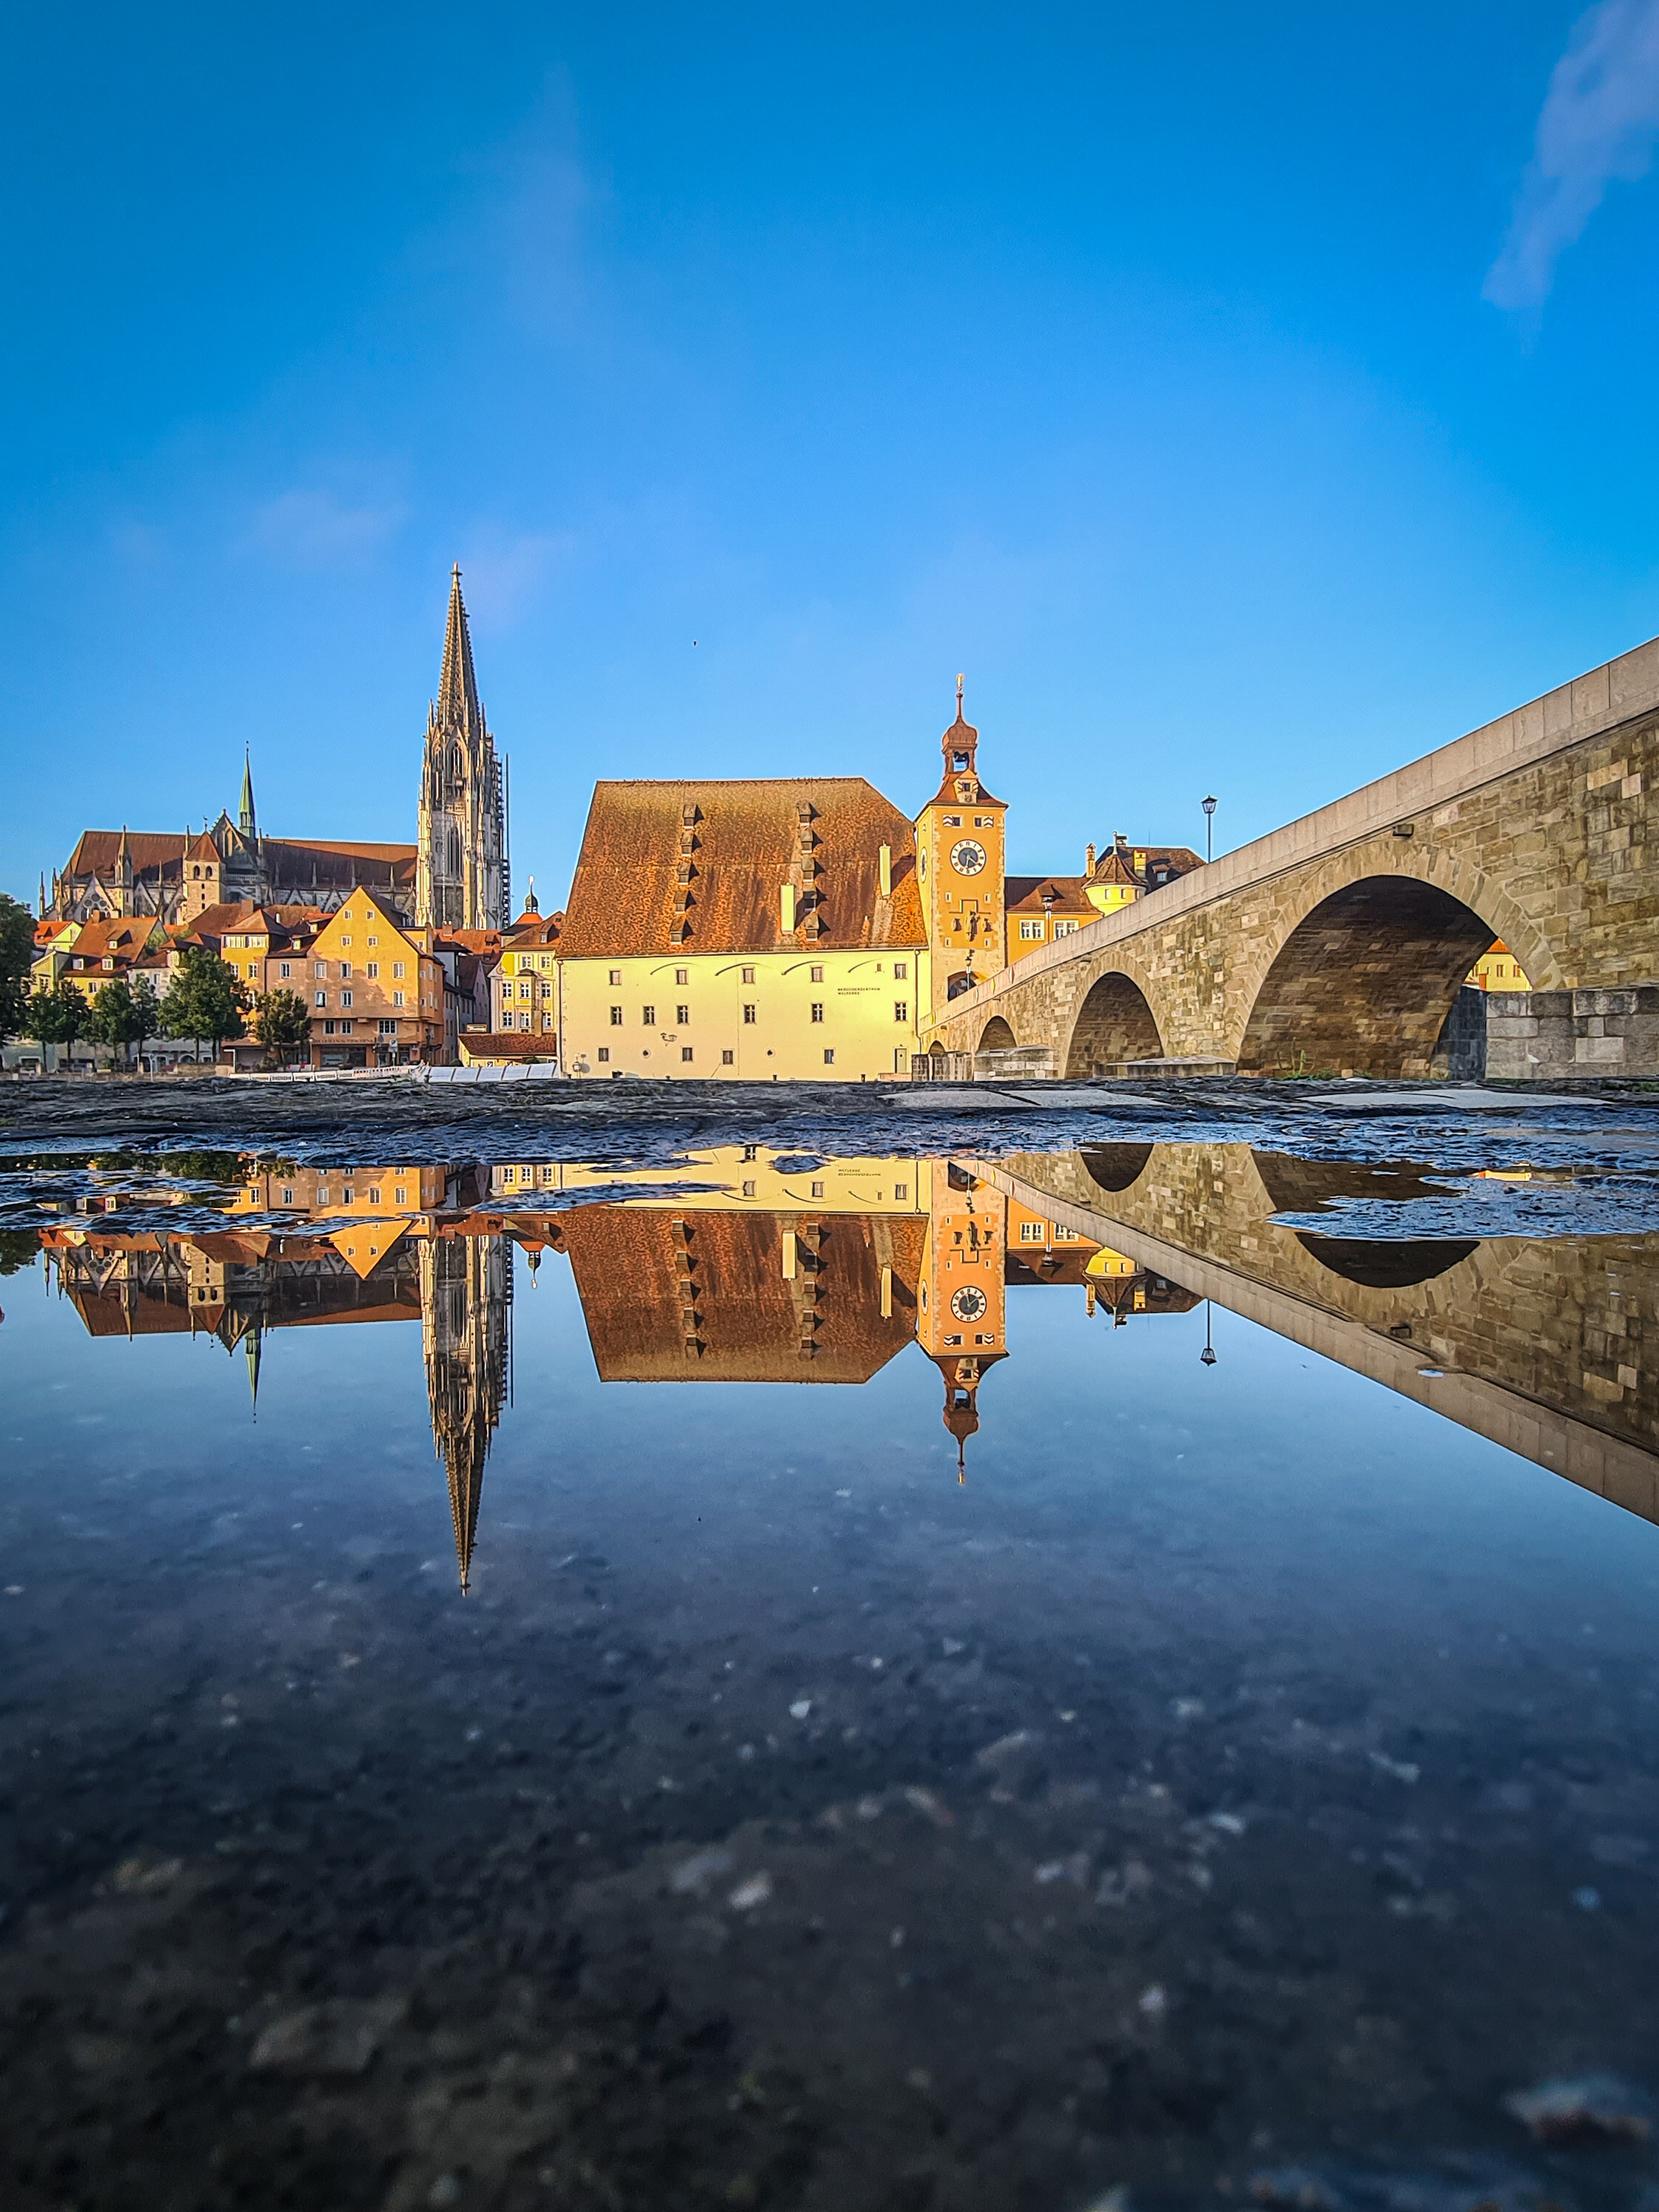 Familienticket Regensburg mit dem Schiff zur Welterbestadt